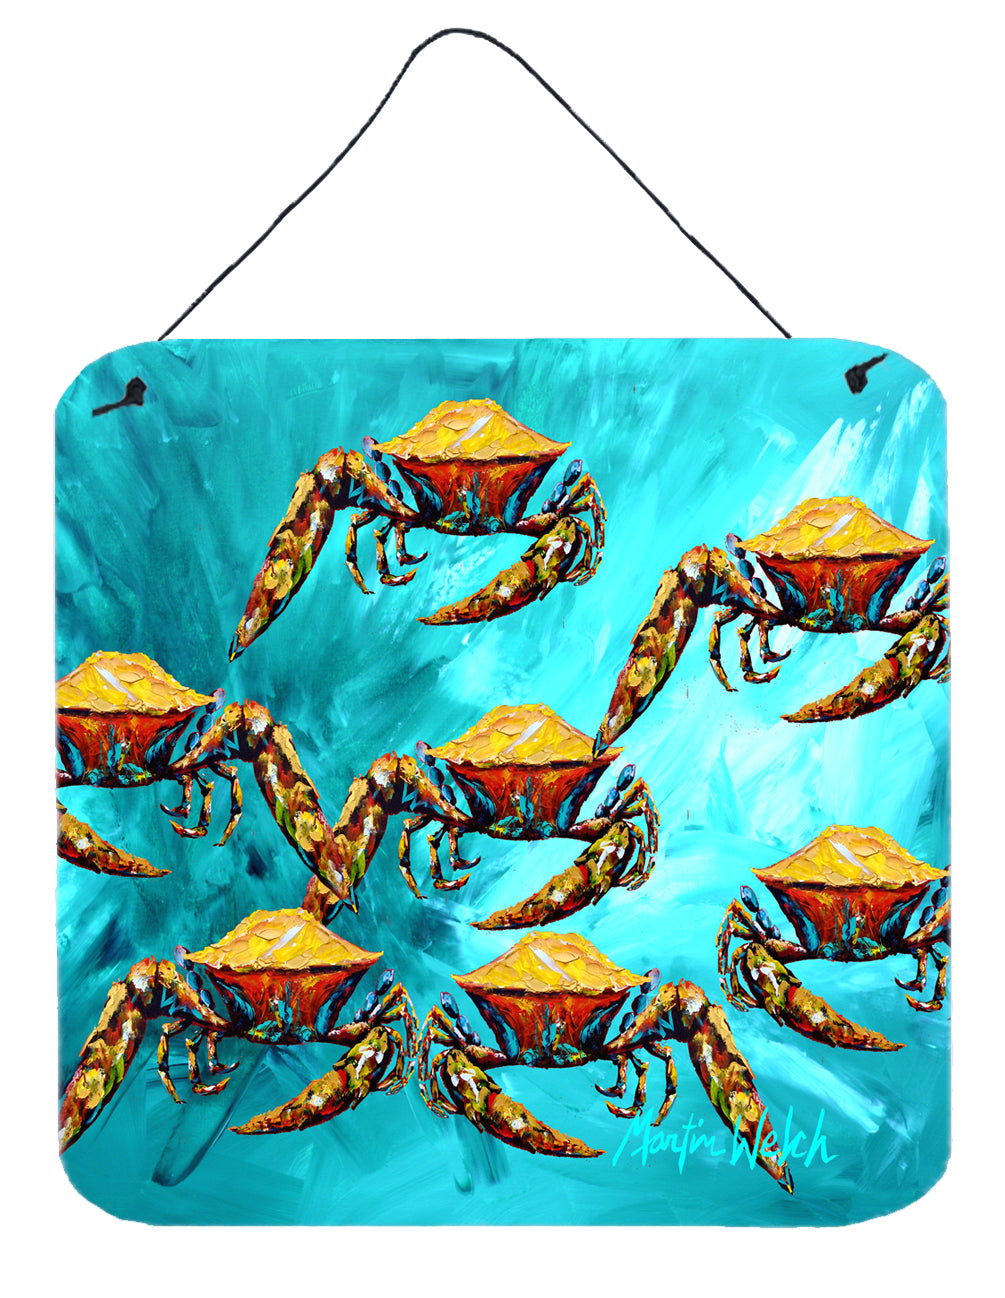 Buy this Crab Lotta Crabs Wall or Door Hanging Prints